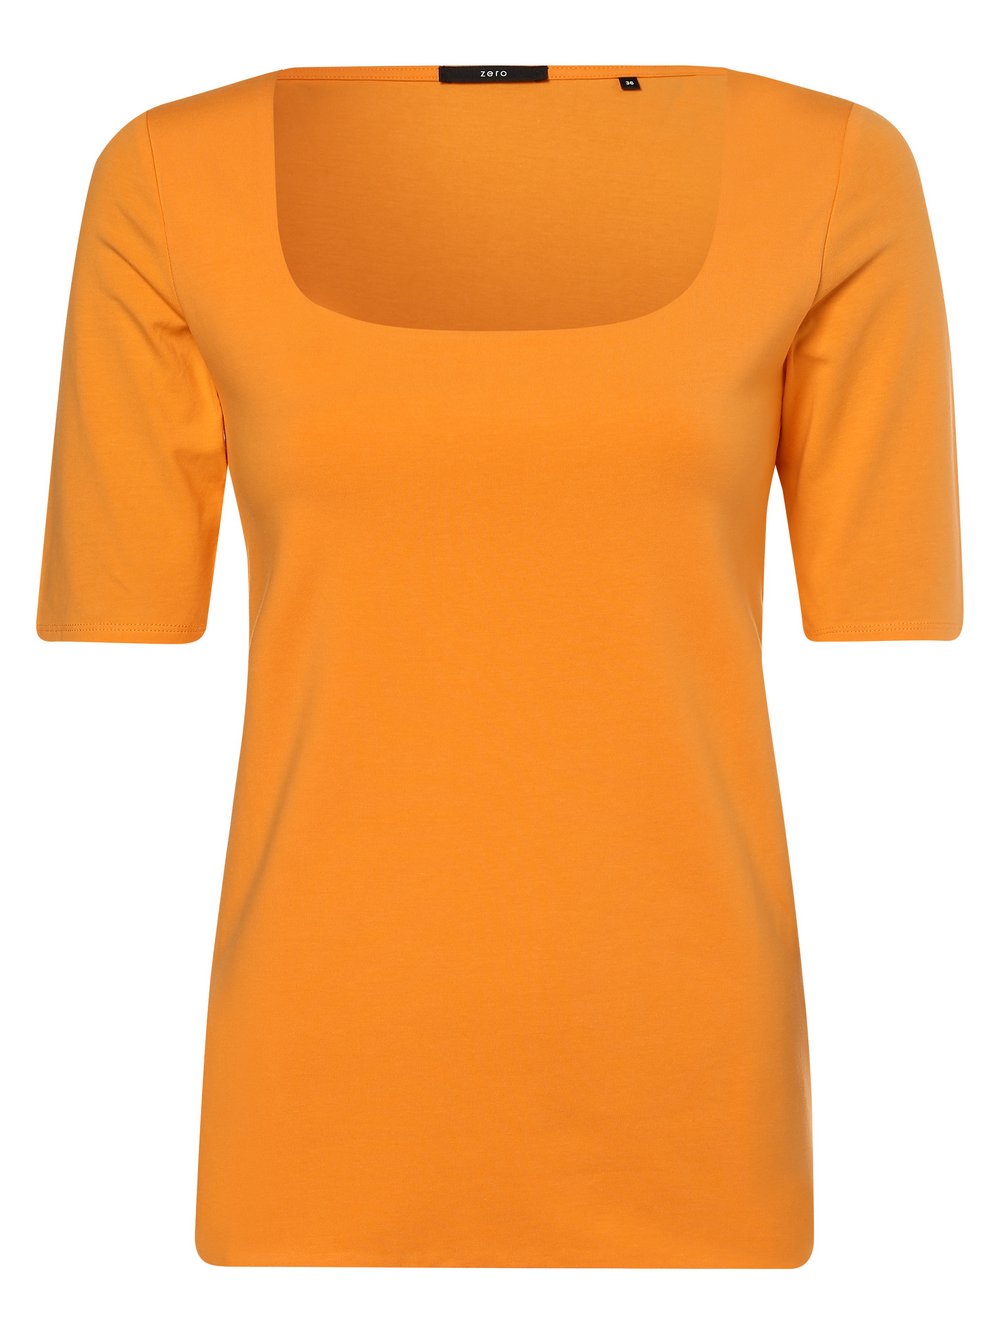 Zero - T-shirt damski, pomarańczowy